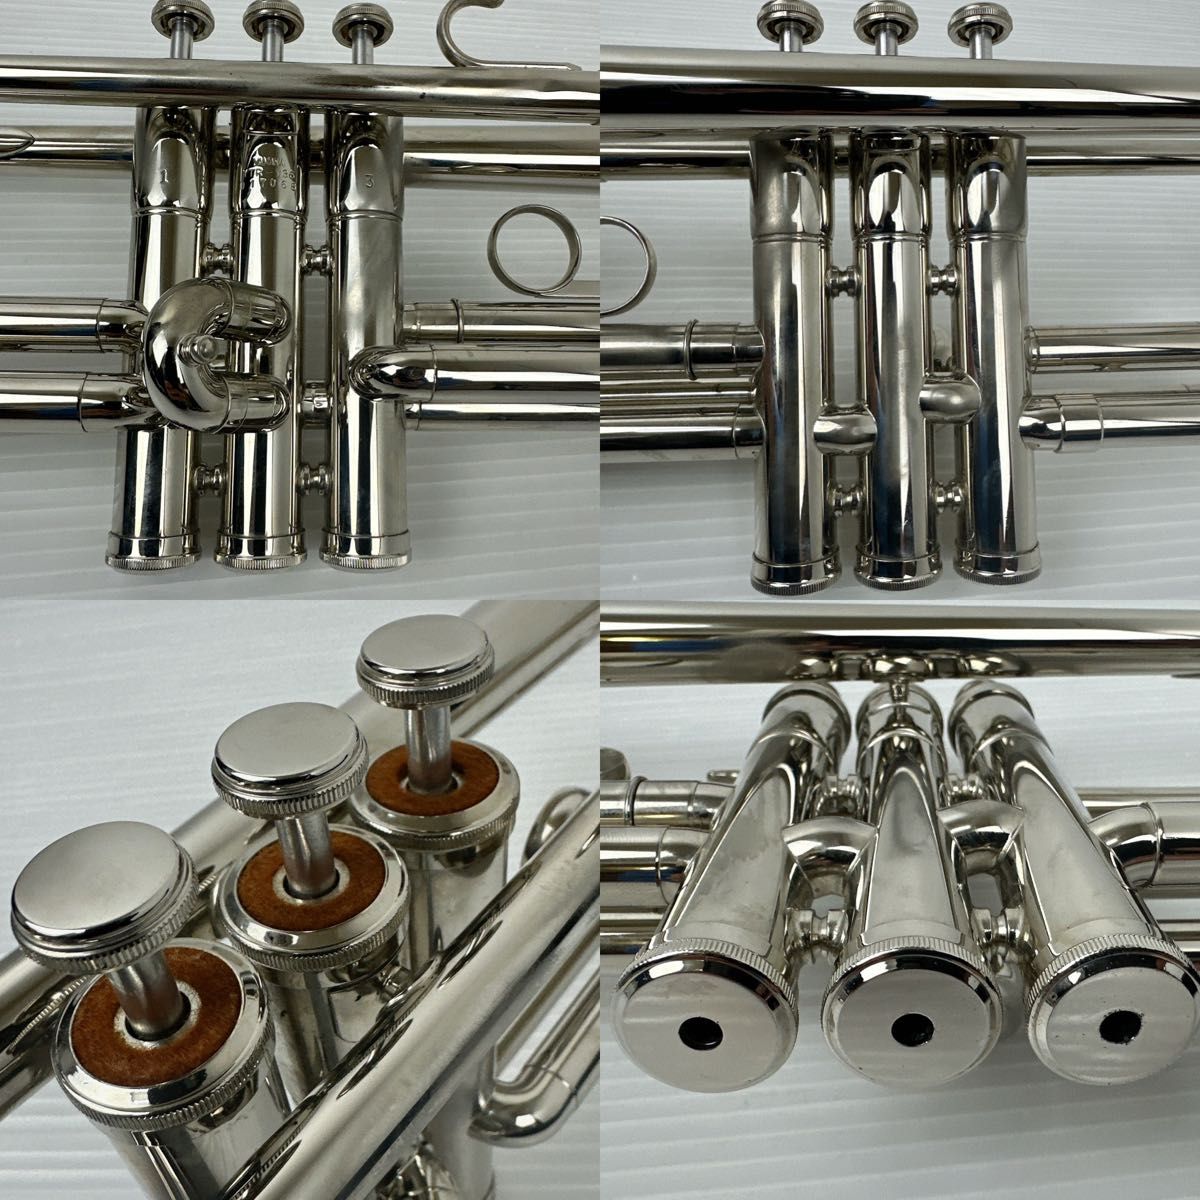 ヤマハ　YTR-136 トランペット　銀メッキ　ハードケース 管楽器